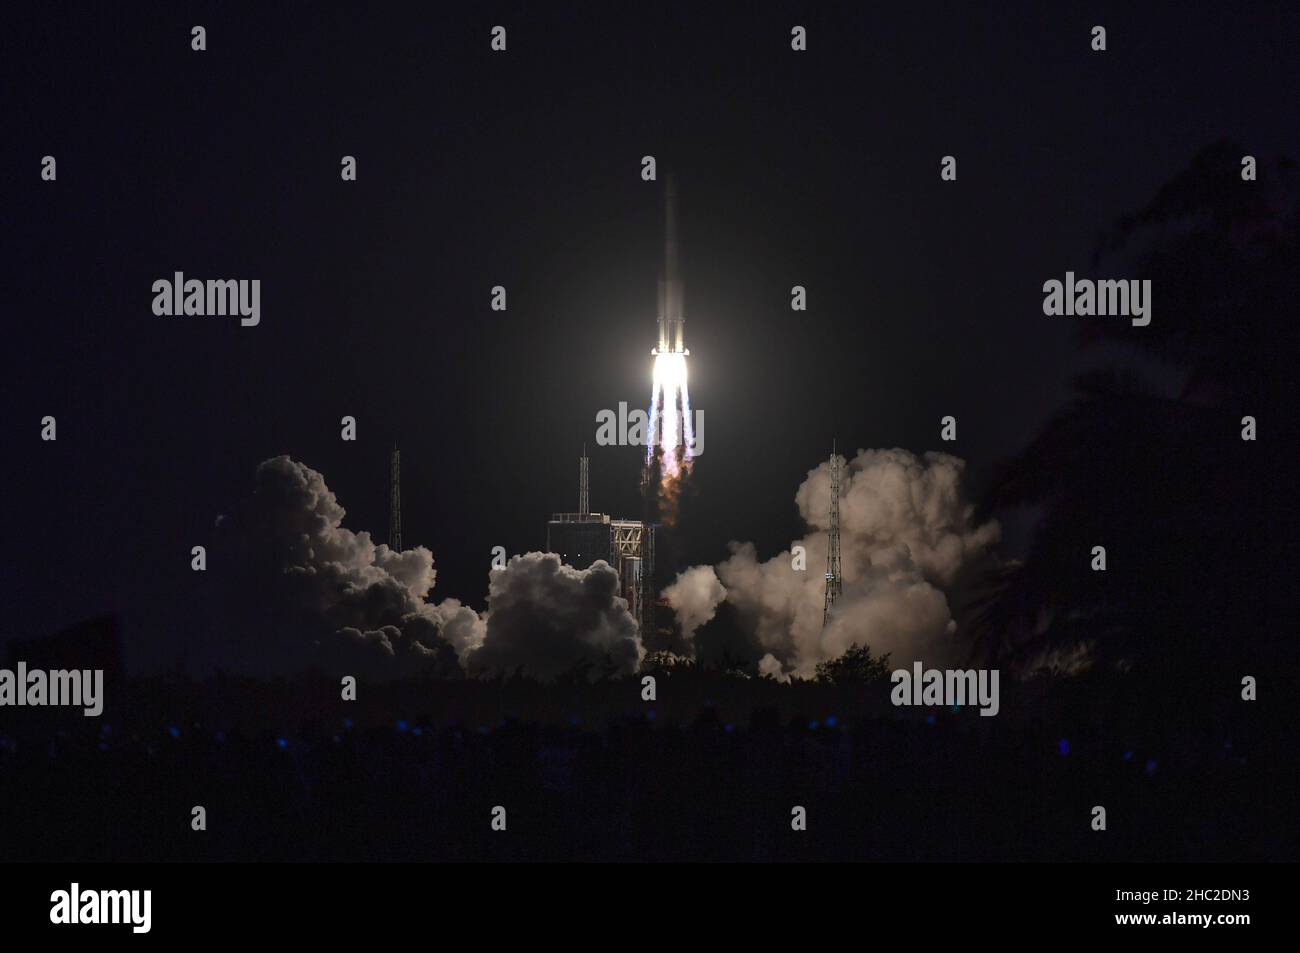 Wenchang. 23rd Dez 2021. Eine lange Rakete vom März 7A, die zwei Satelliten trägt, startet am 23. Dezember 2021 vom Startgelände der Raumsonde Wenchang in der südchinesischen Provinz Hainan. Die Rakete explodierte um 6:12 Uhr (Pekinger Zeit) am Start-Standort der Raumsonde Wenchang in der südlichen Provinz Hainan und schickte bald Shiyan-12 01- und Shiyan-12 02-Satelliten in die voreingestellte Umlaufbahn. Die Mission markierte den 402nd. Flug der Long March Trägerraketen. Kredit: Guo Cheng/Xinhua/Alamy Live Nachrichten Stockfoto